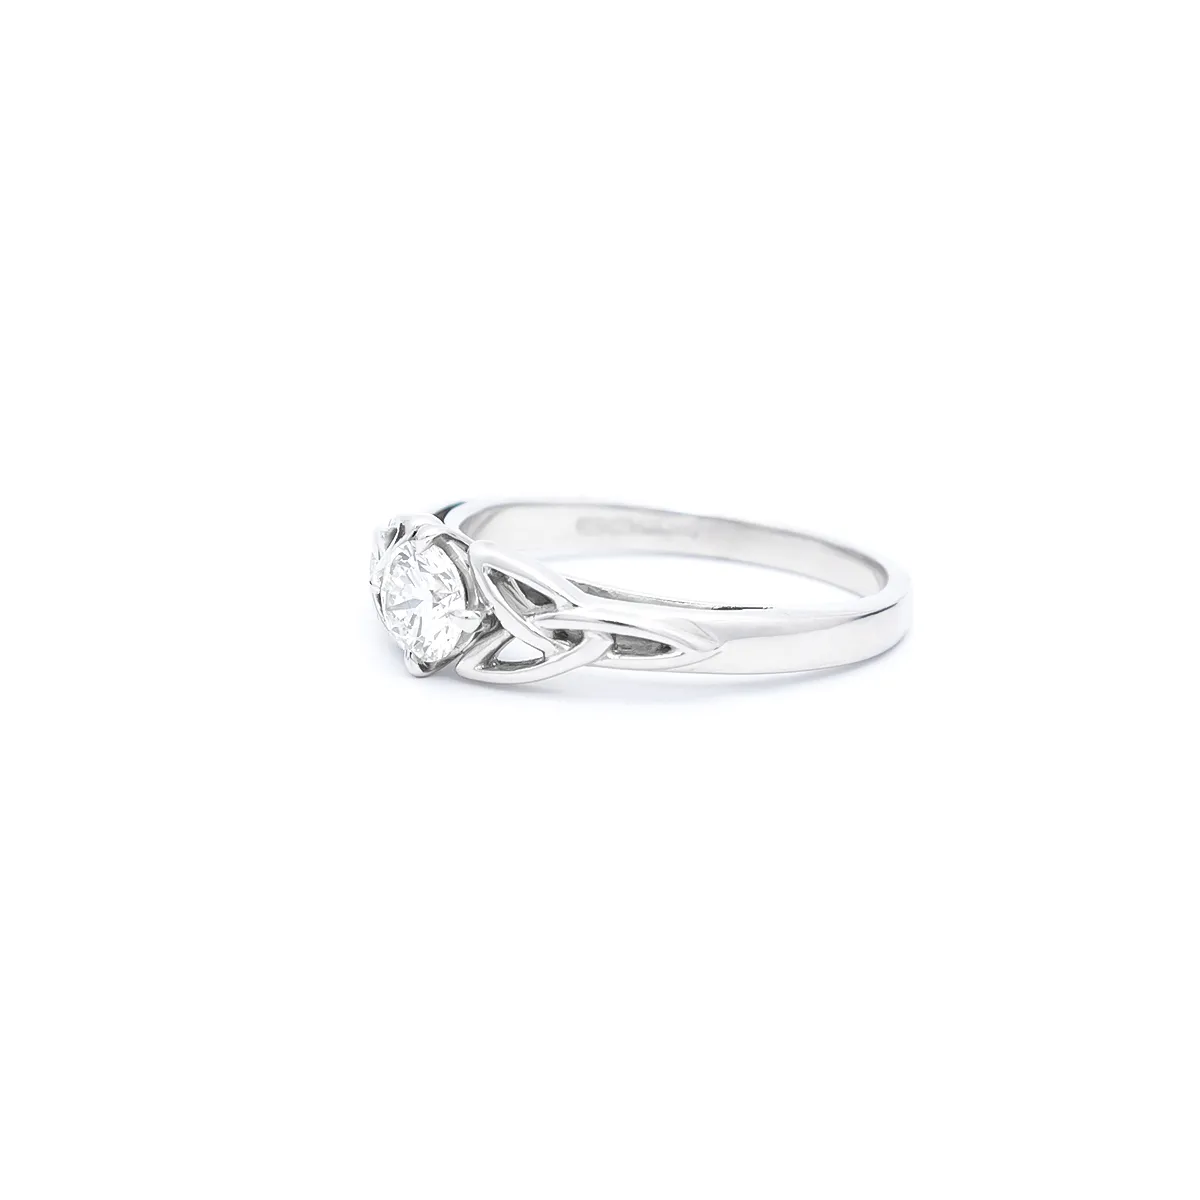 IJCP0027 White Gold Diamond Celtic Ring 2